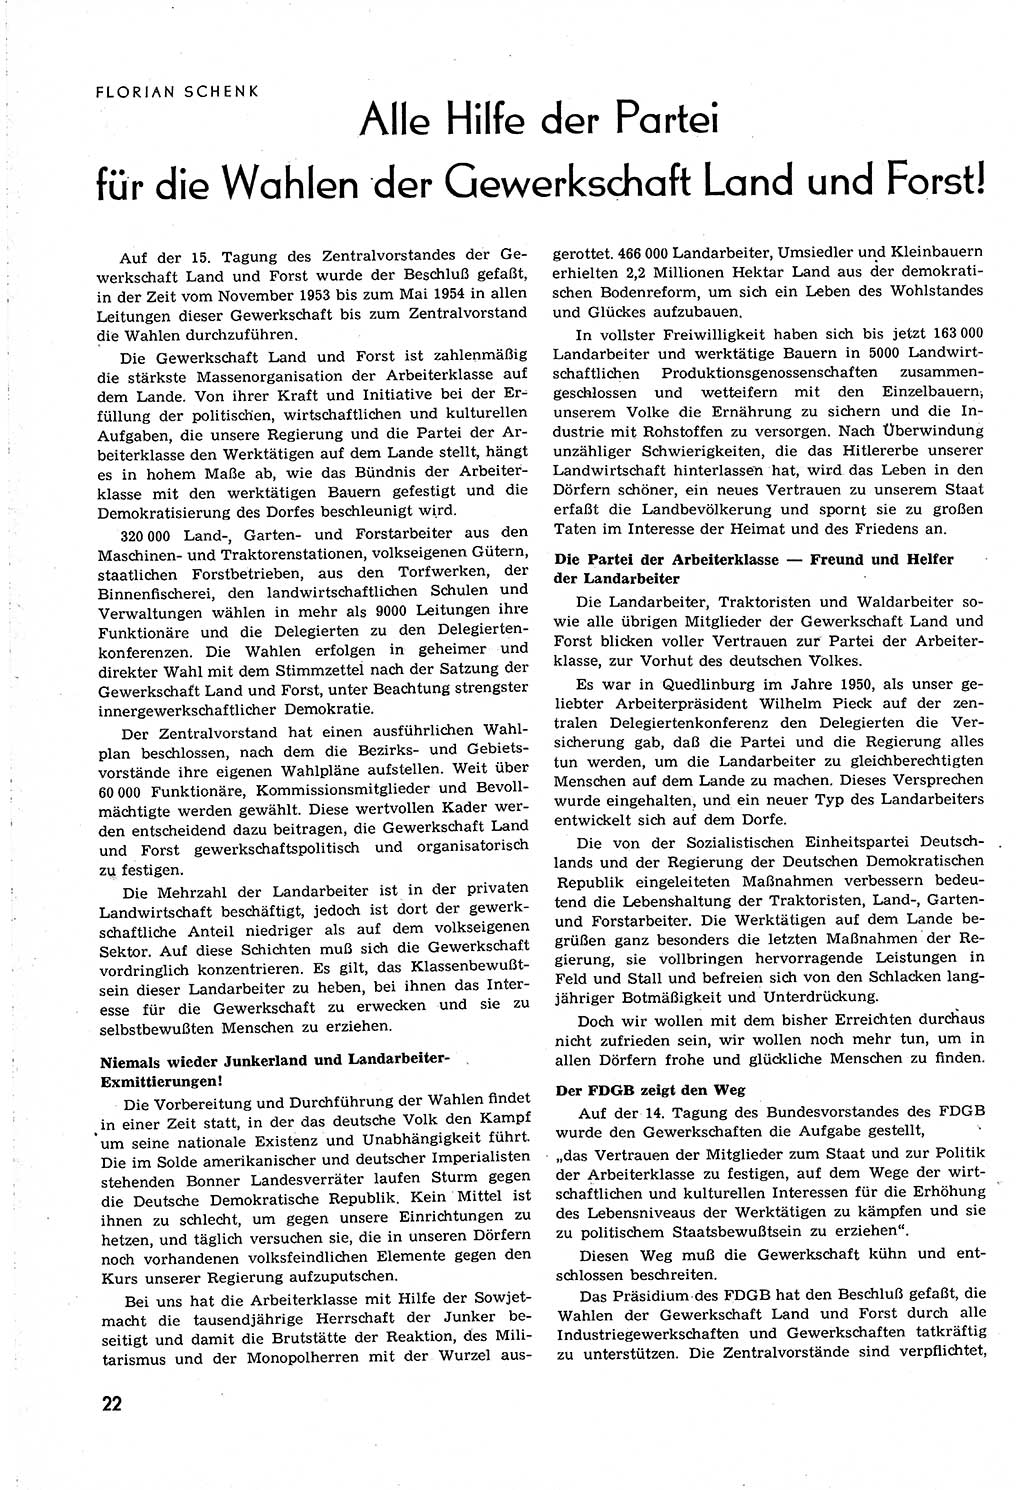 Neuer Weg (NW), Organ des Zentralkomitees (ZK) [Sozialistische Einheitspartei Deutschlands (SED)] für alle Parteiarbeiter, 8. Jahrgang [Deutsche Demokratische Republik (DDR)] 1953, Heft 21/22 (NW ZK SED DDR 1953, H. 21/22)